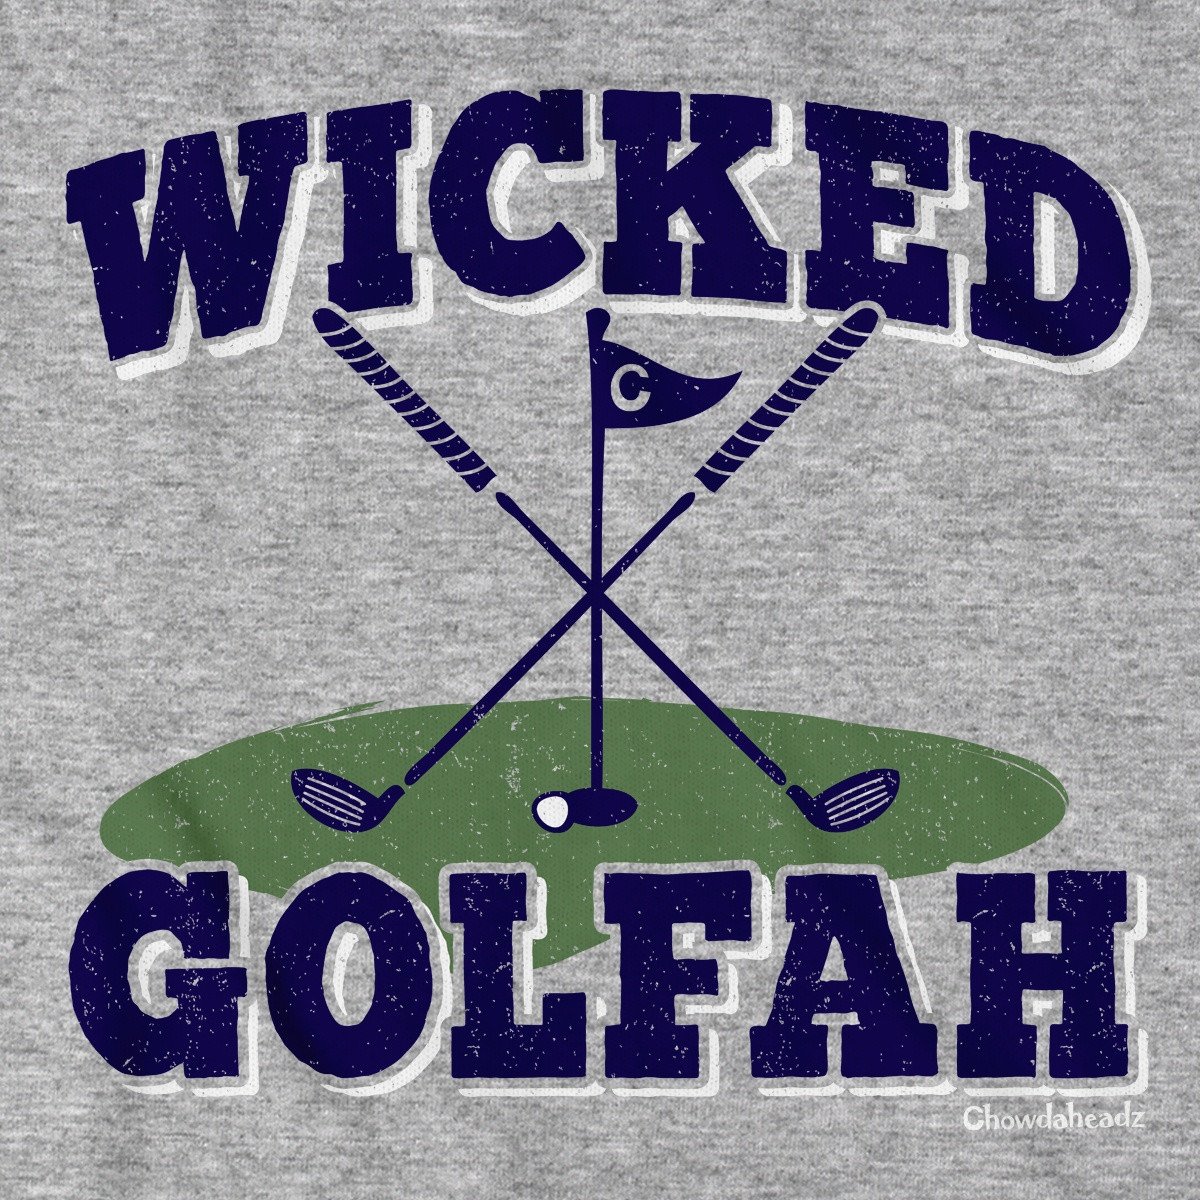 Wicked Golfah T-Shirt - Chowdaheadz